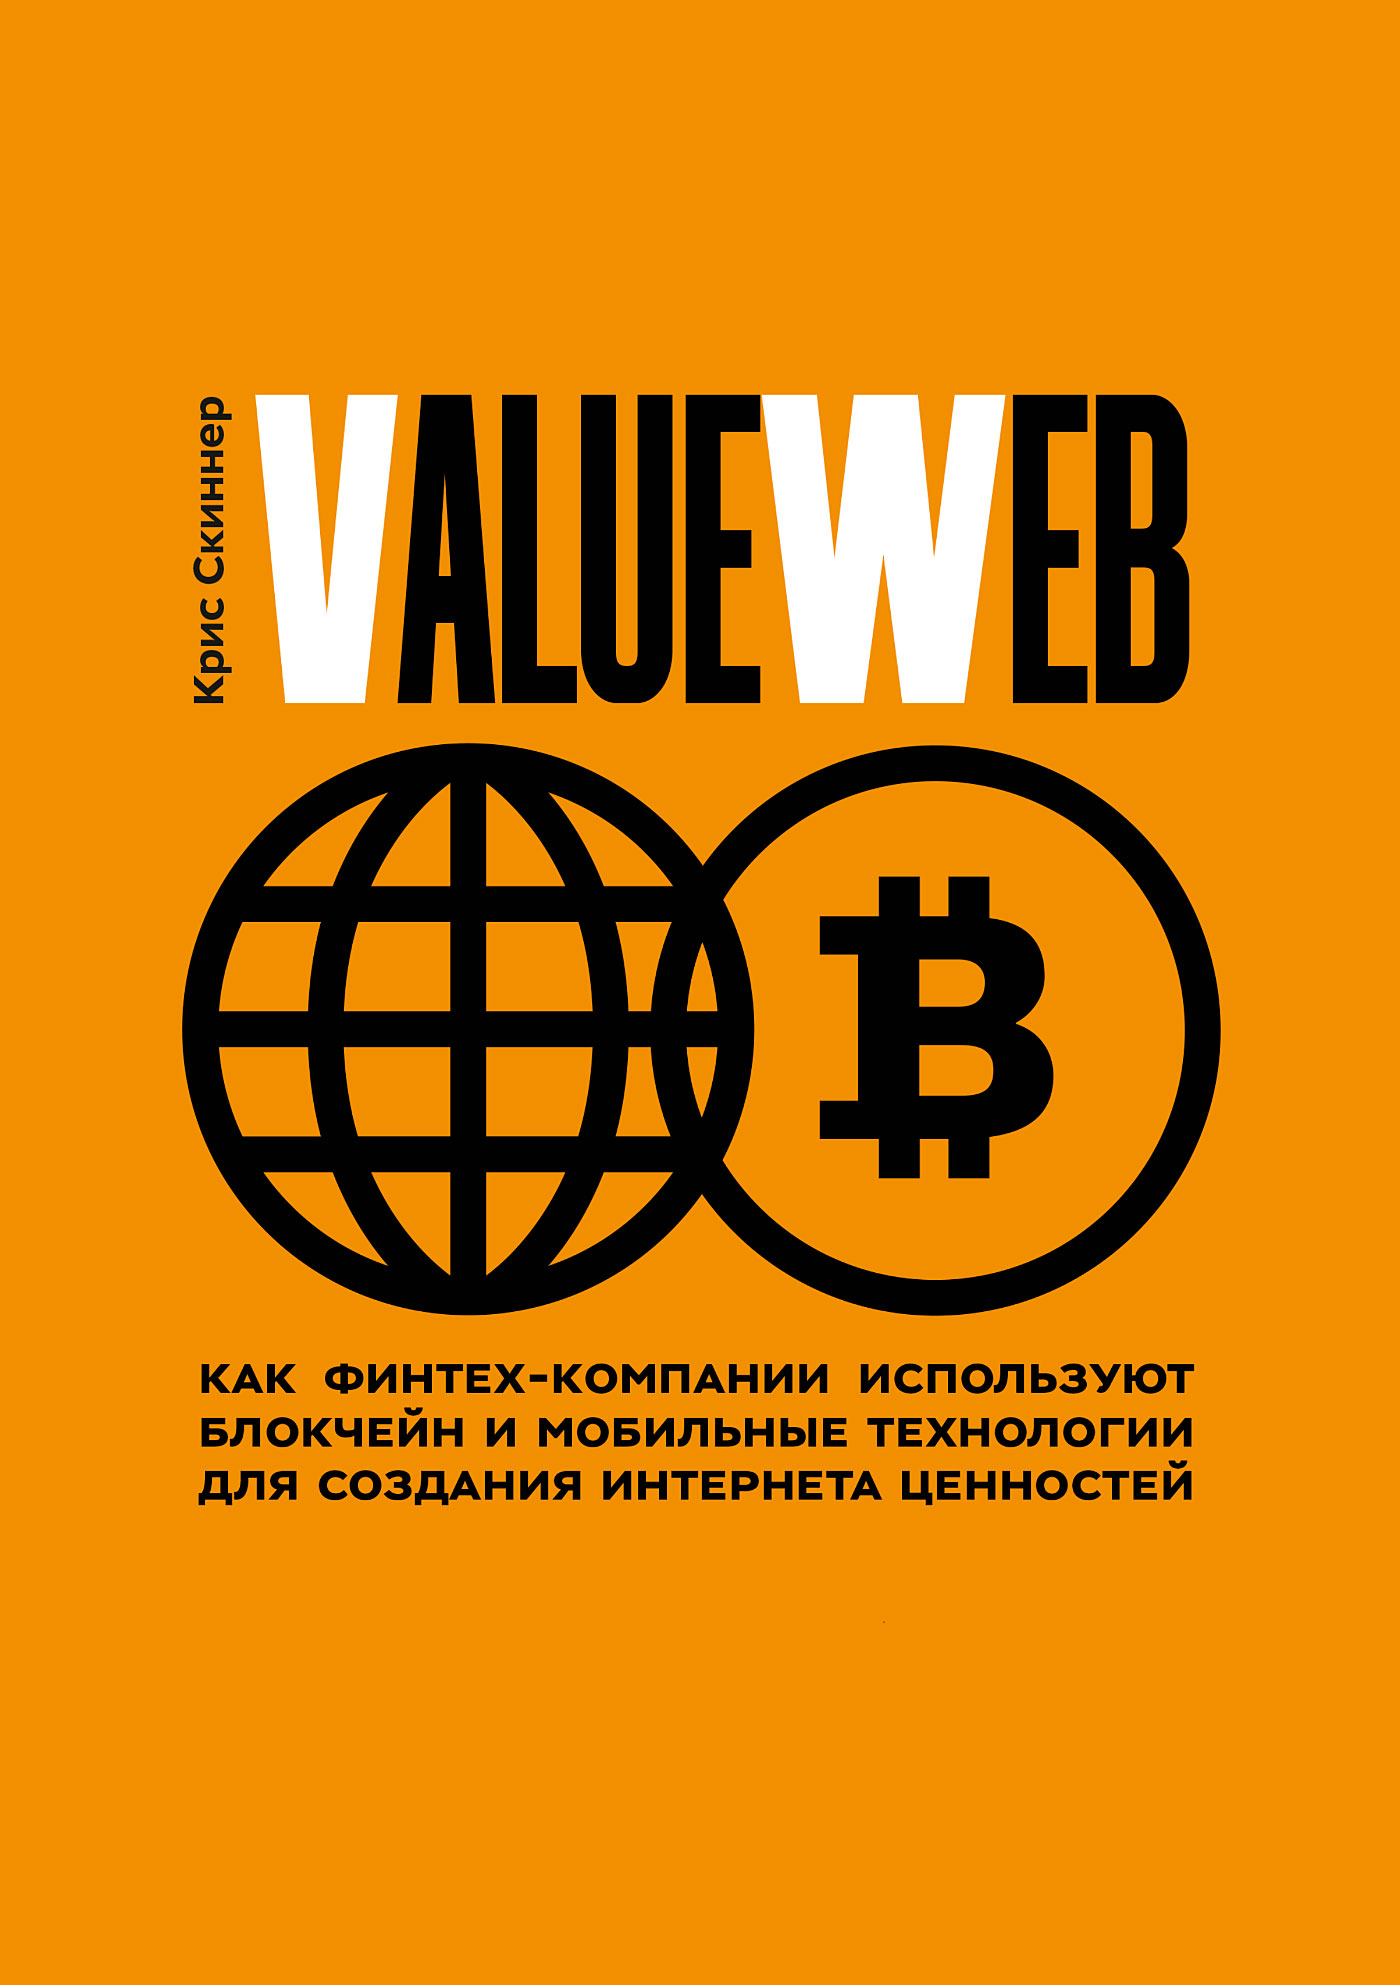 ValueWeb.Как финтех-компании используют блокчейн и мобильные технологии для создания интернета ценностей